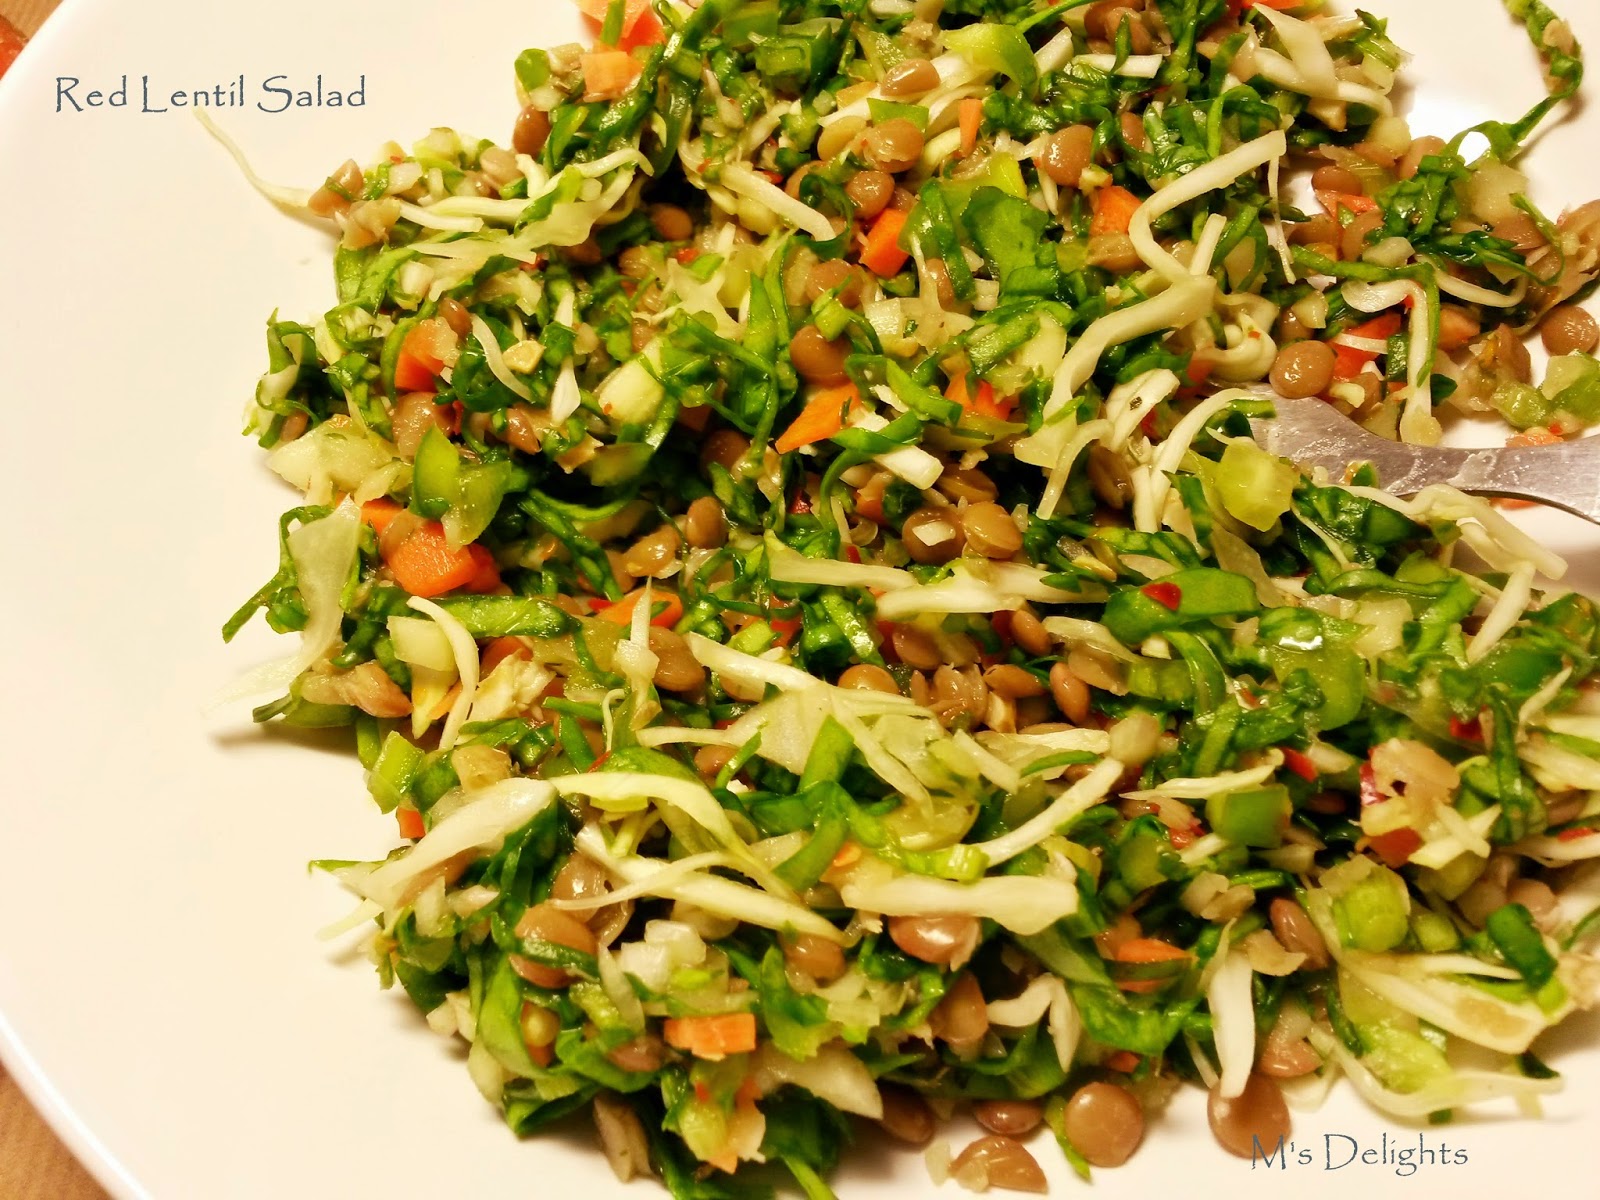 M's Delights: Red Lentil Salad